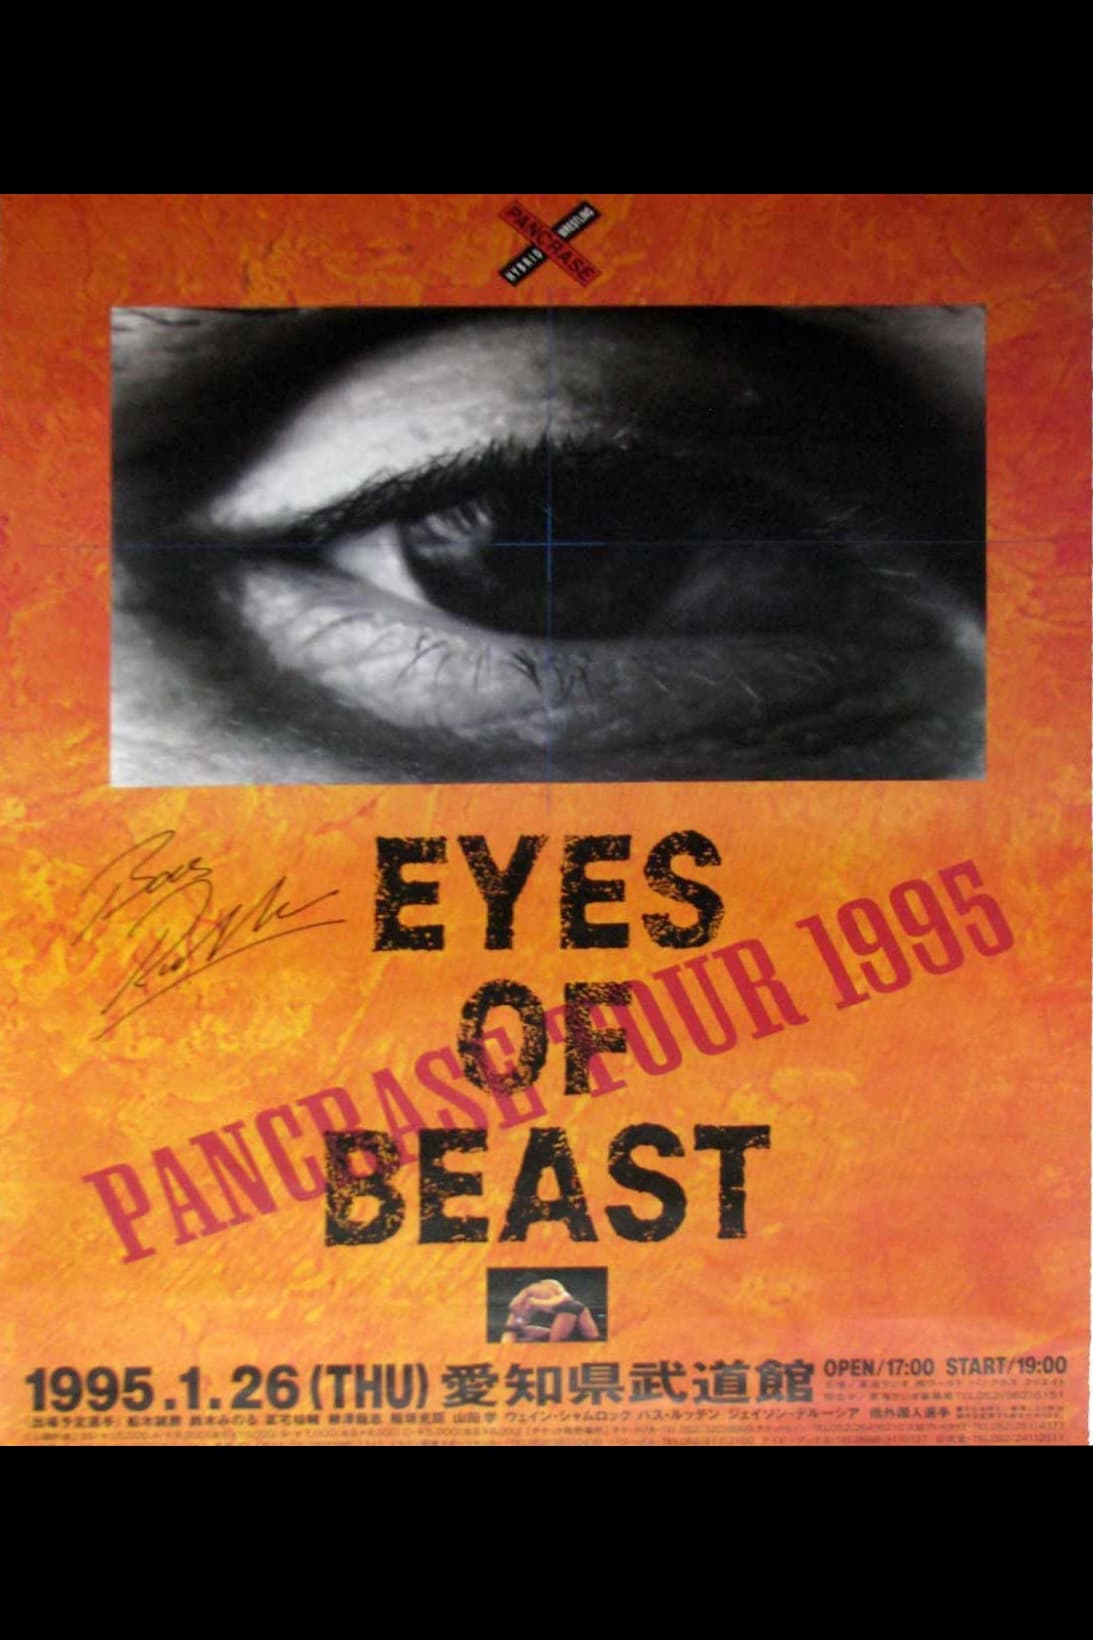 Pancrase: Eyes of Beast 1 (1995)